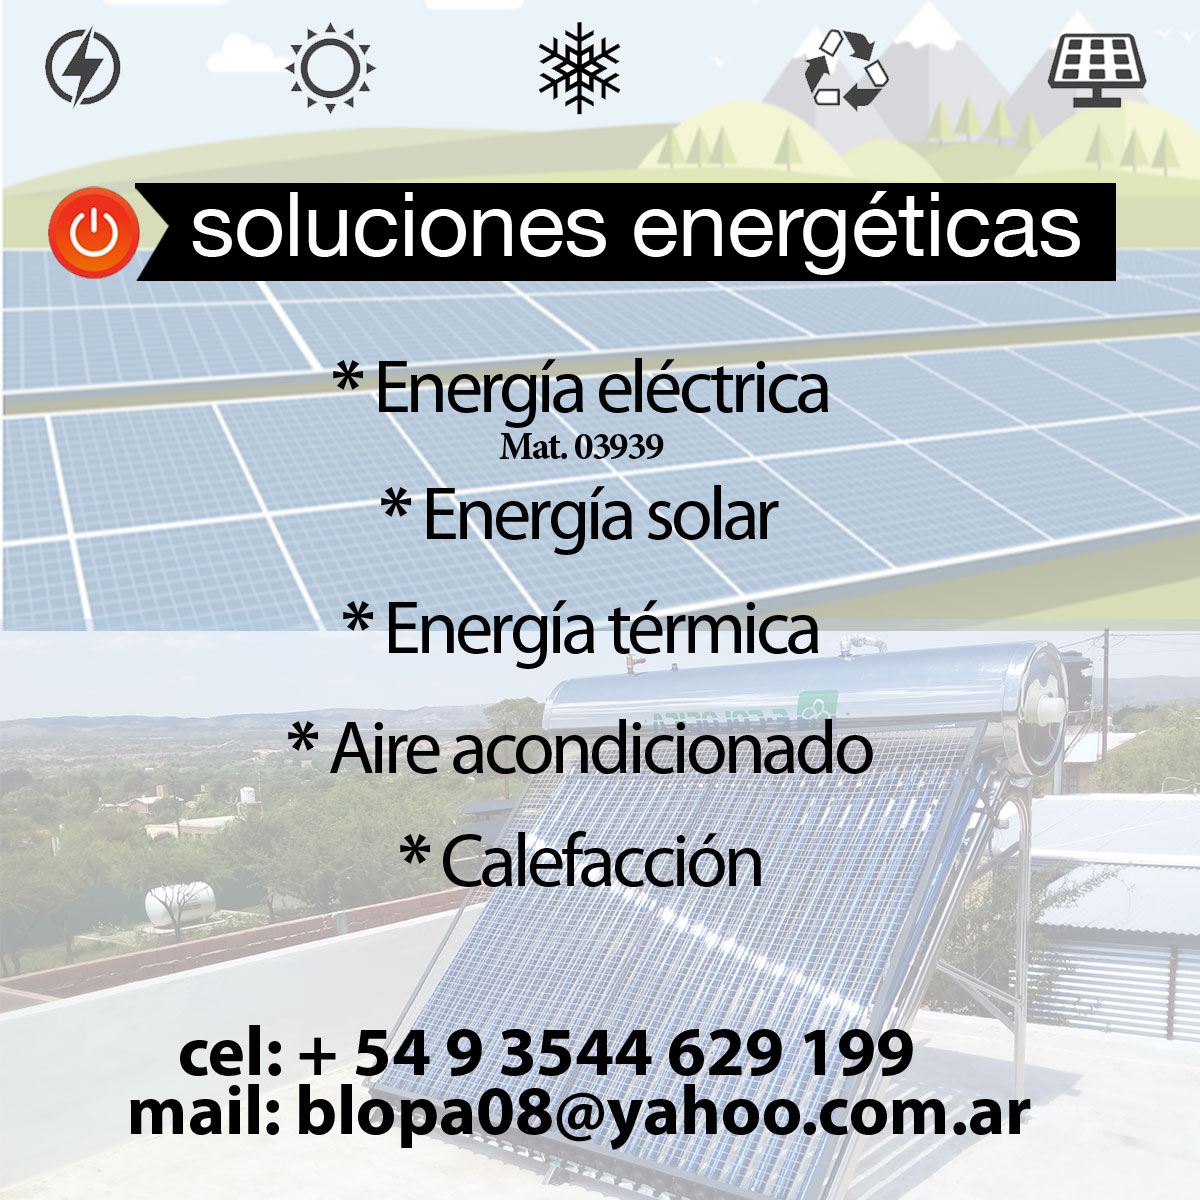 Pablo de Cabrera - InfoGuia Traslasierra - Energía Solar, electricista matriculado, aire acondicionado, calefacción